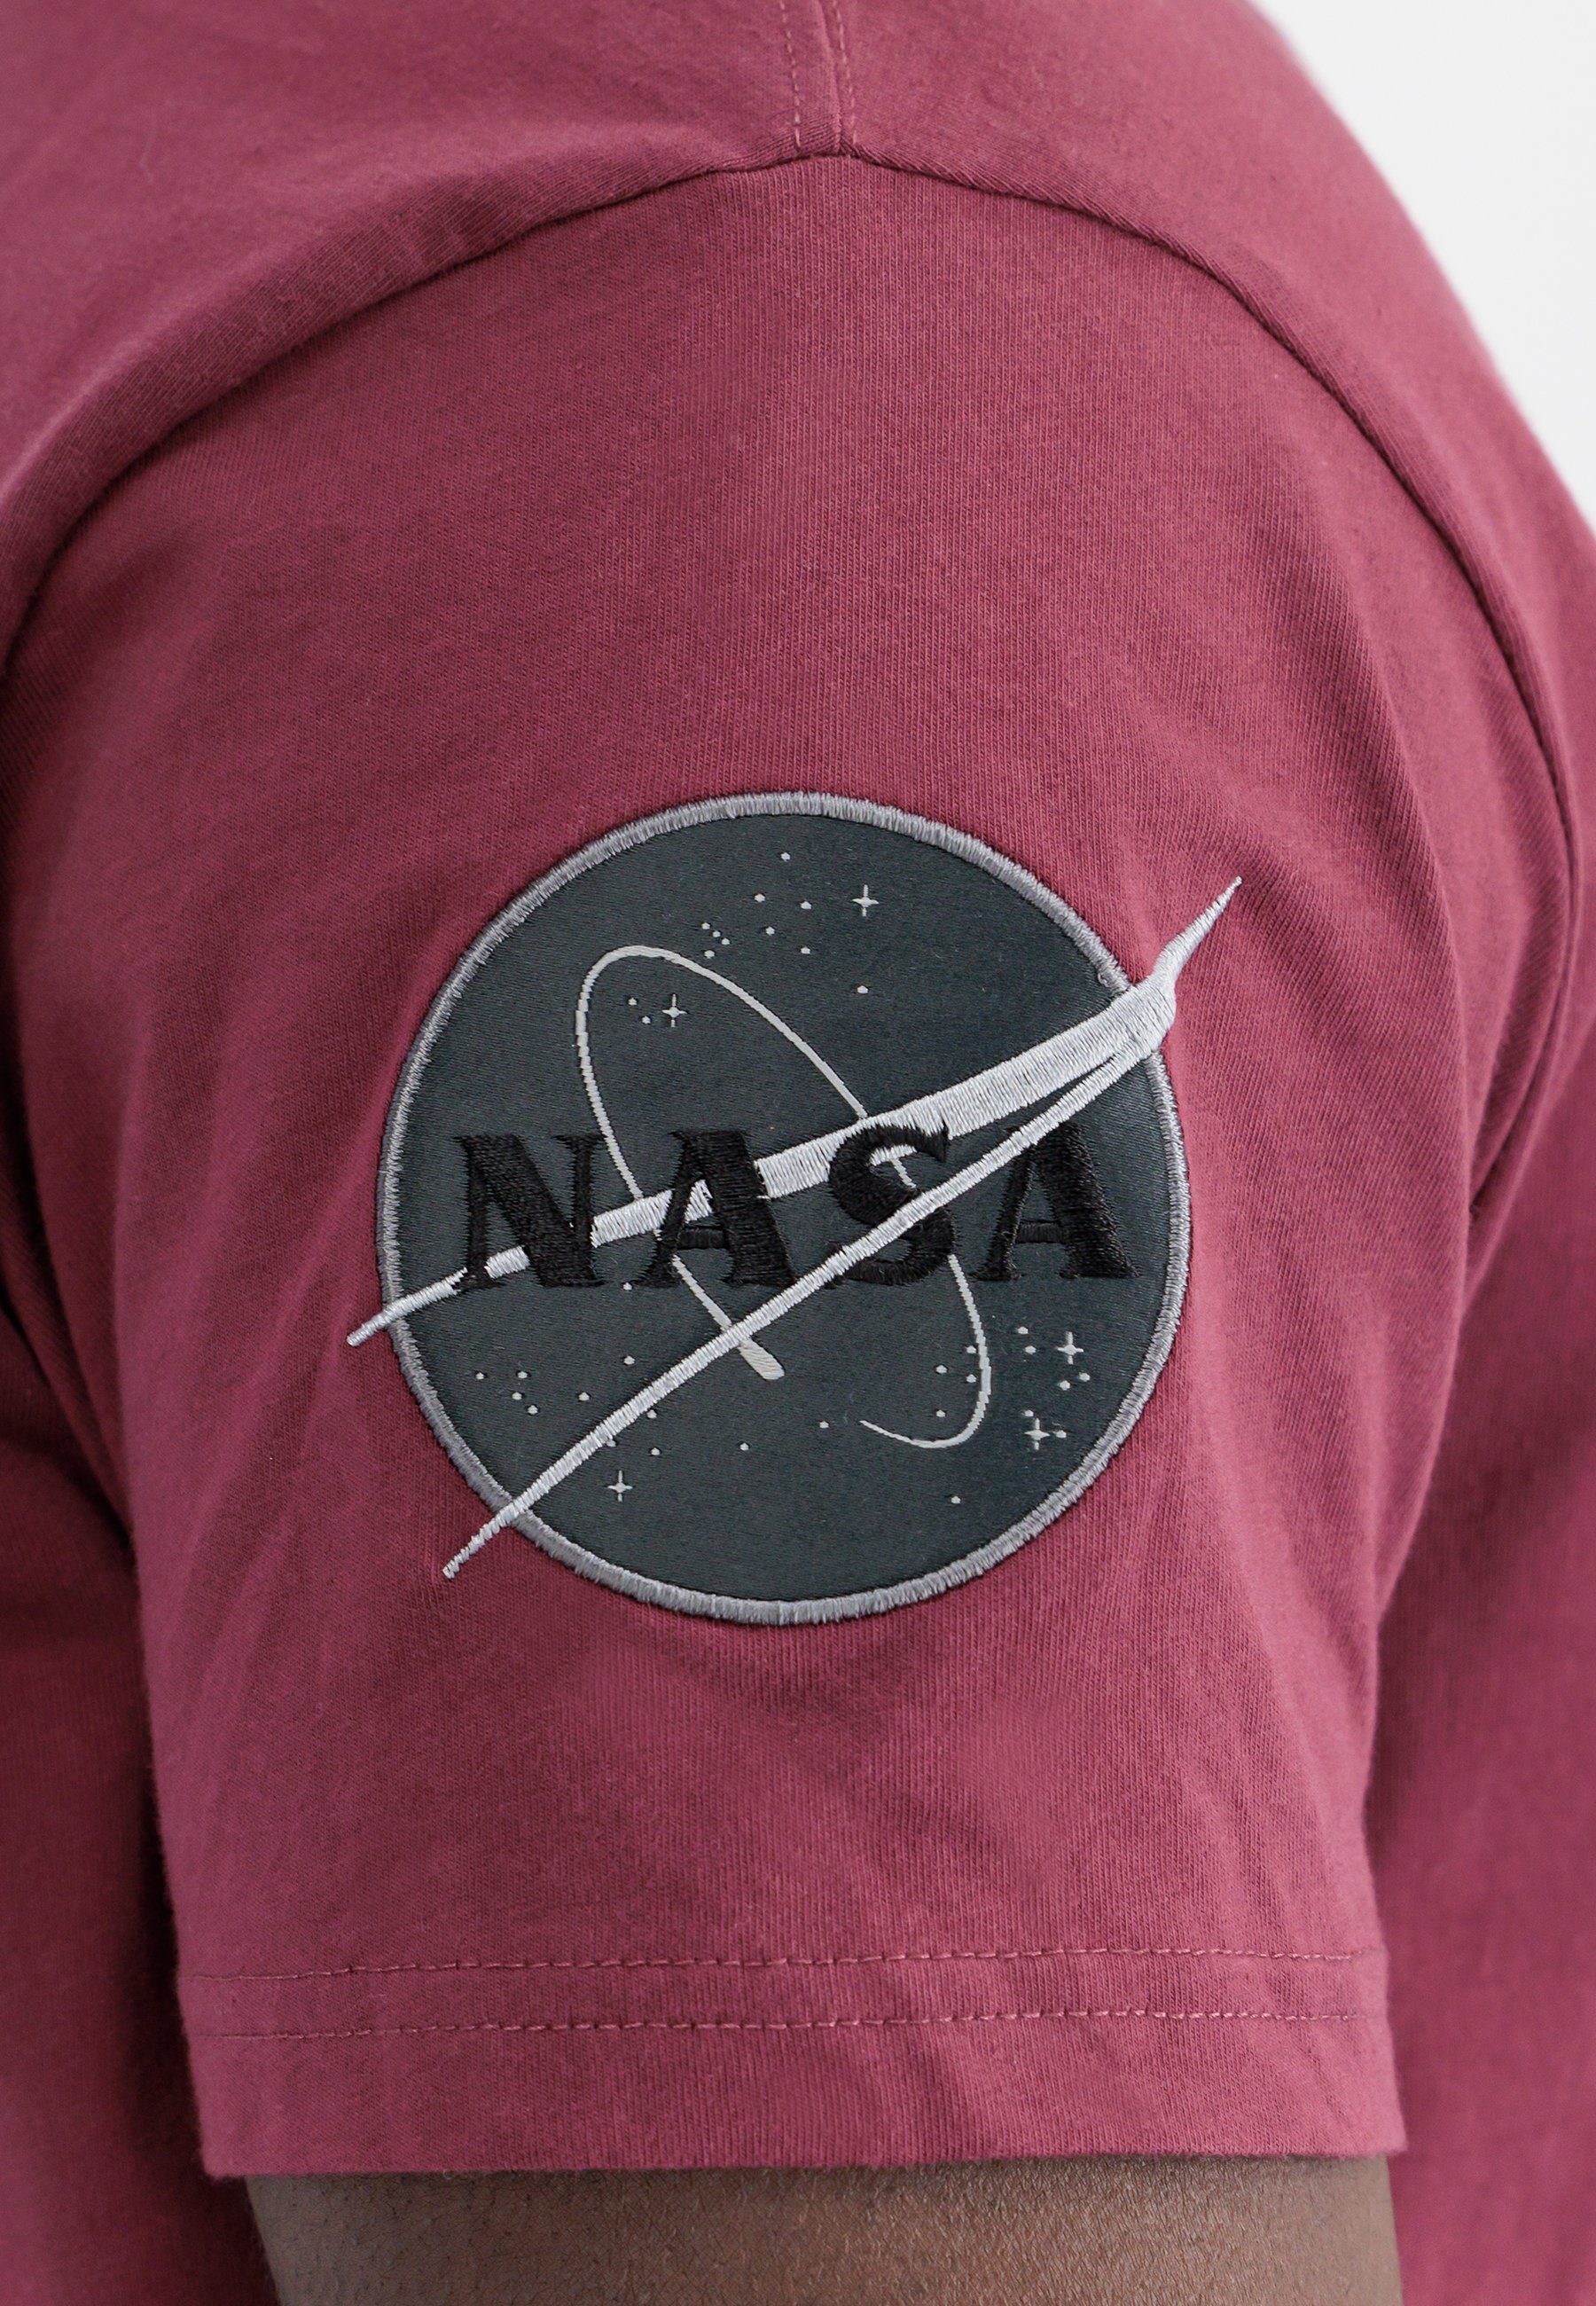 Alpha T-Shirt T-Shirt Dark - Side T-Shirts Industries Alpha burgundy Industries Men